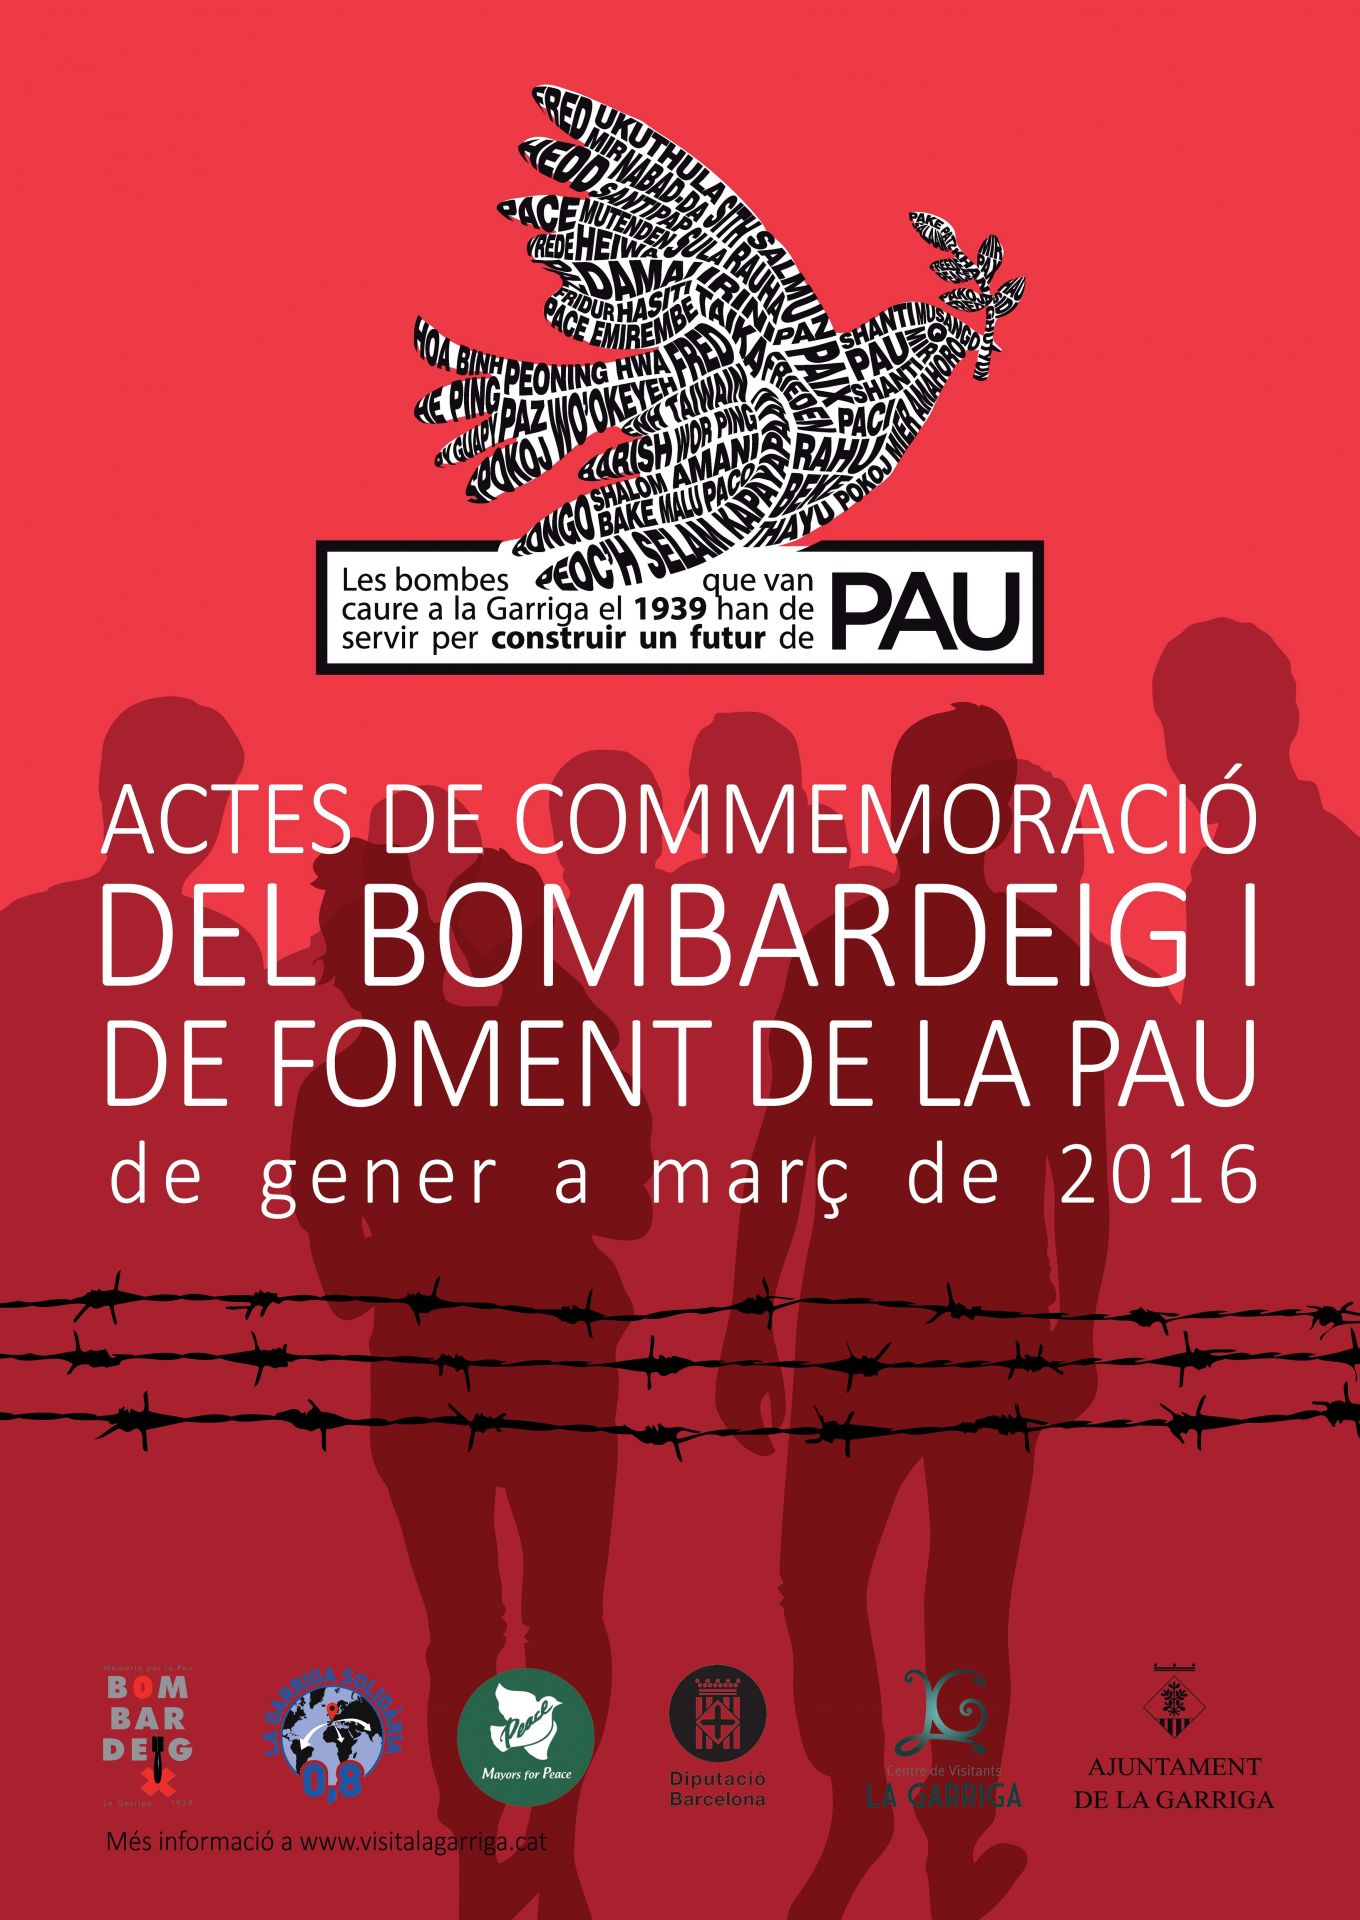 CommemoraciÃ³ del bombardeig a la Garriga 2016